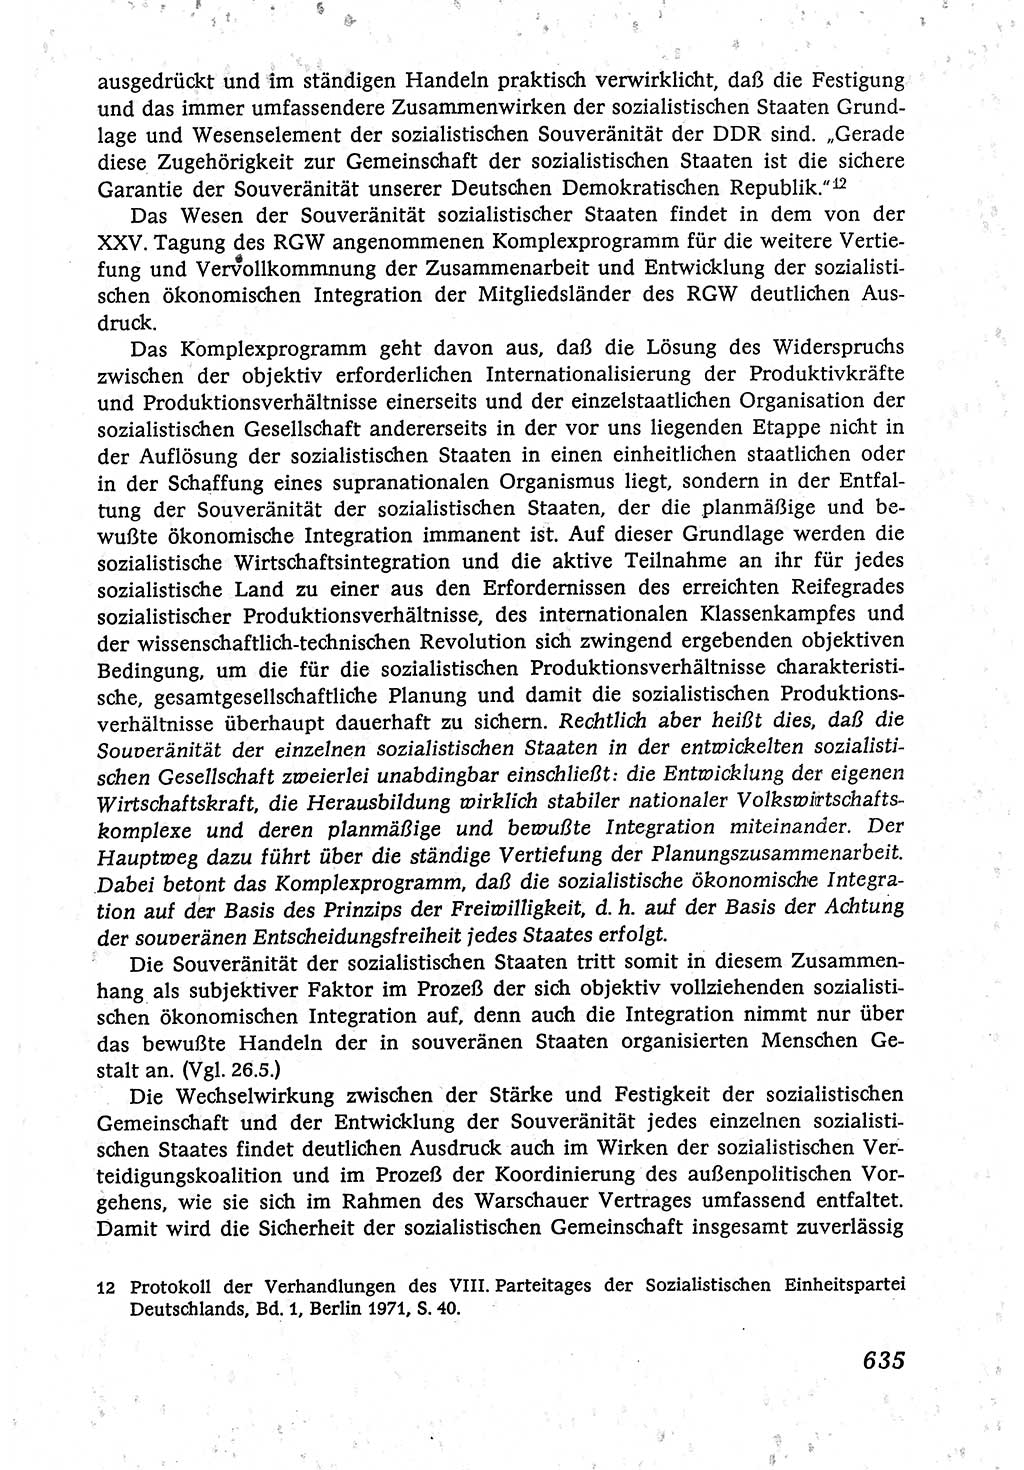 Marxistisch-leninistische (ML) Staats- und Rechtstheorie [Deutsche Demokratische Republik (DDR)], Lehrbuch 1980, Seite 635 (ML St.-R.-Th. DDR Lb. 1980, S. 635)